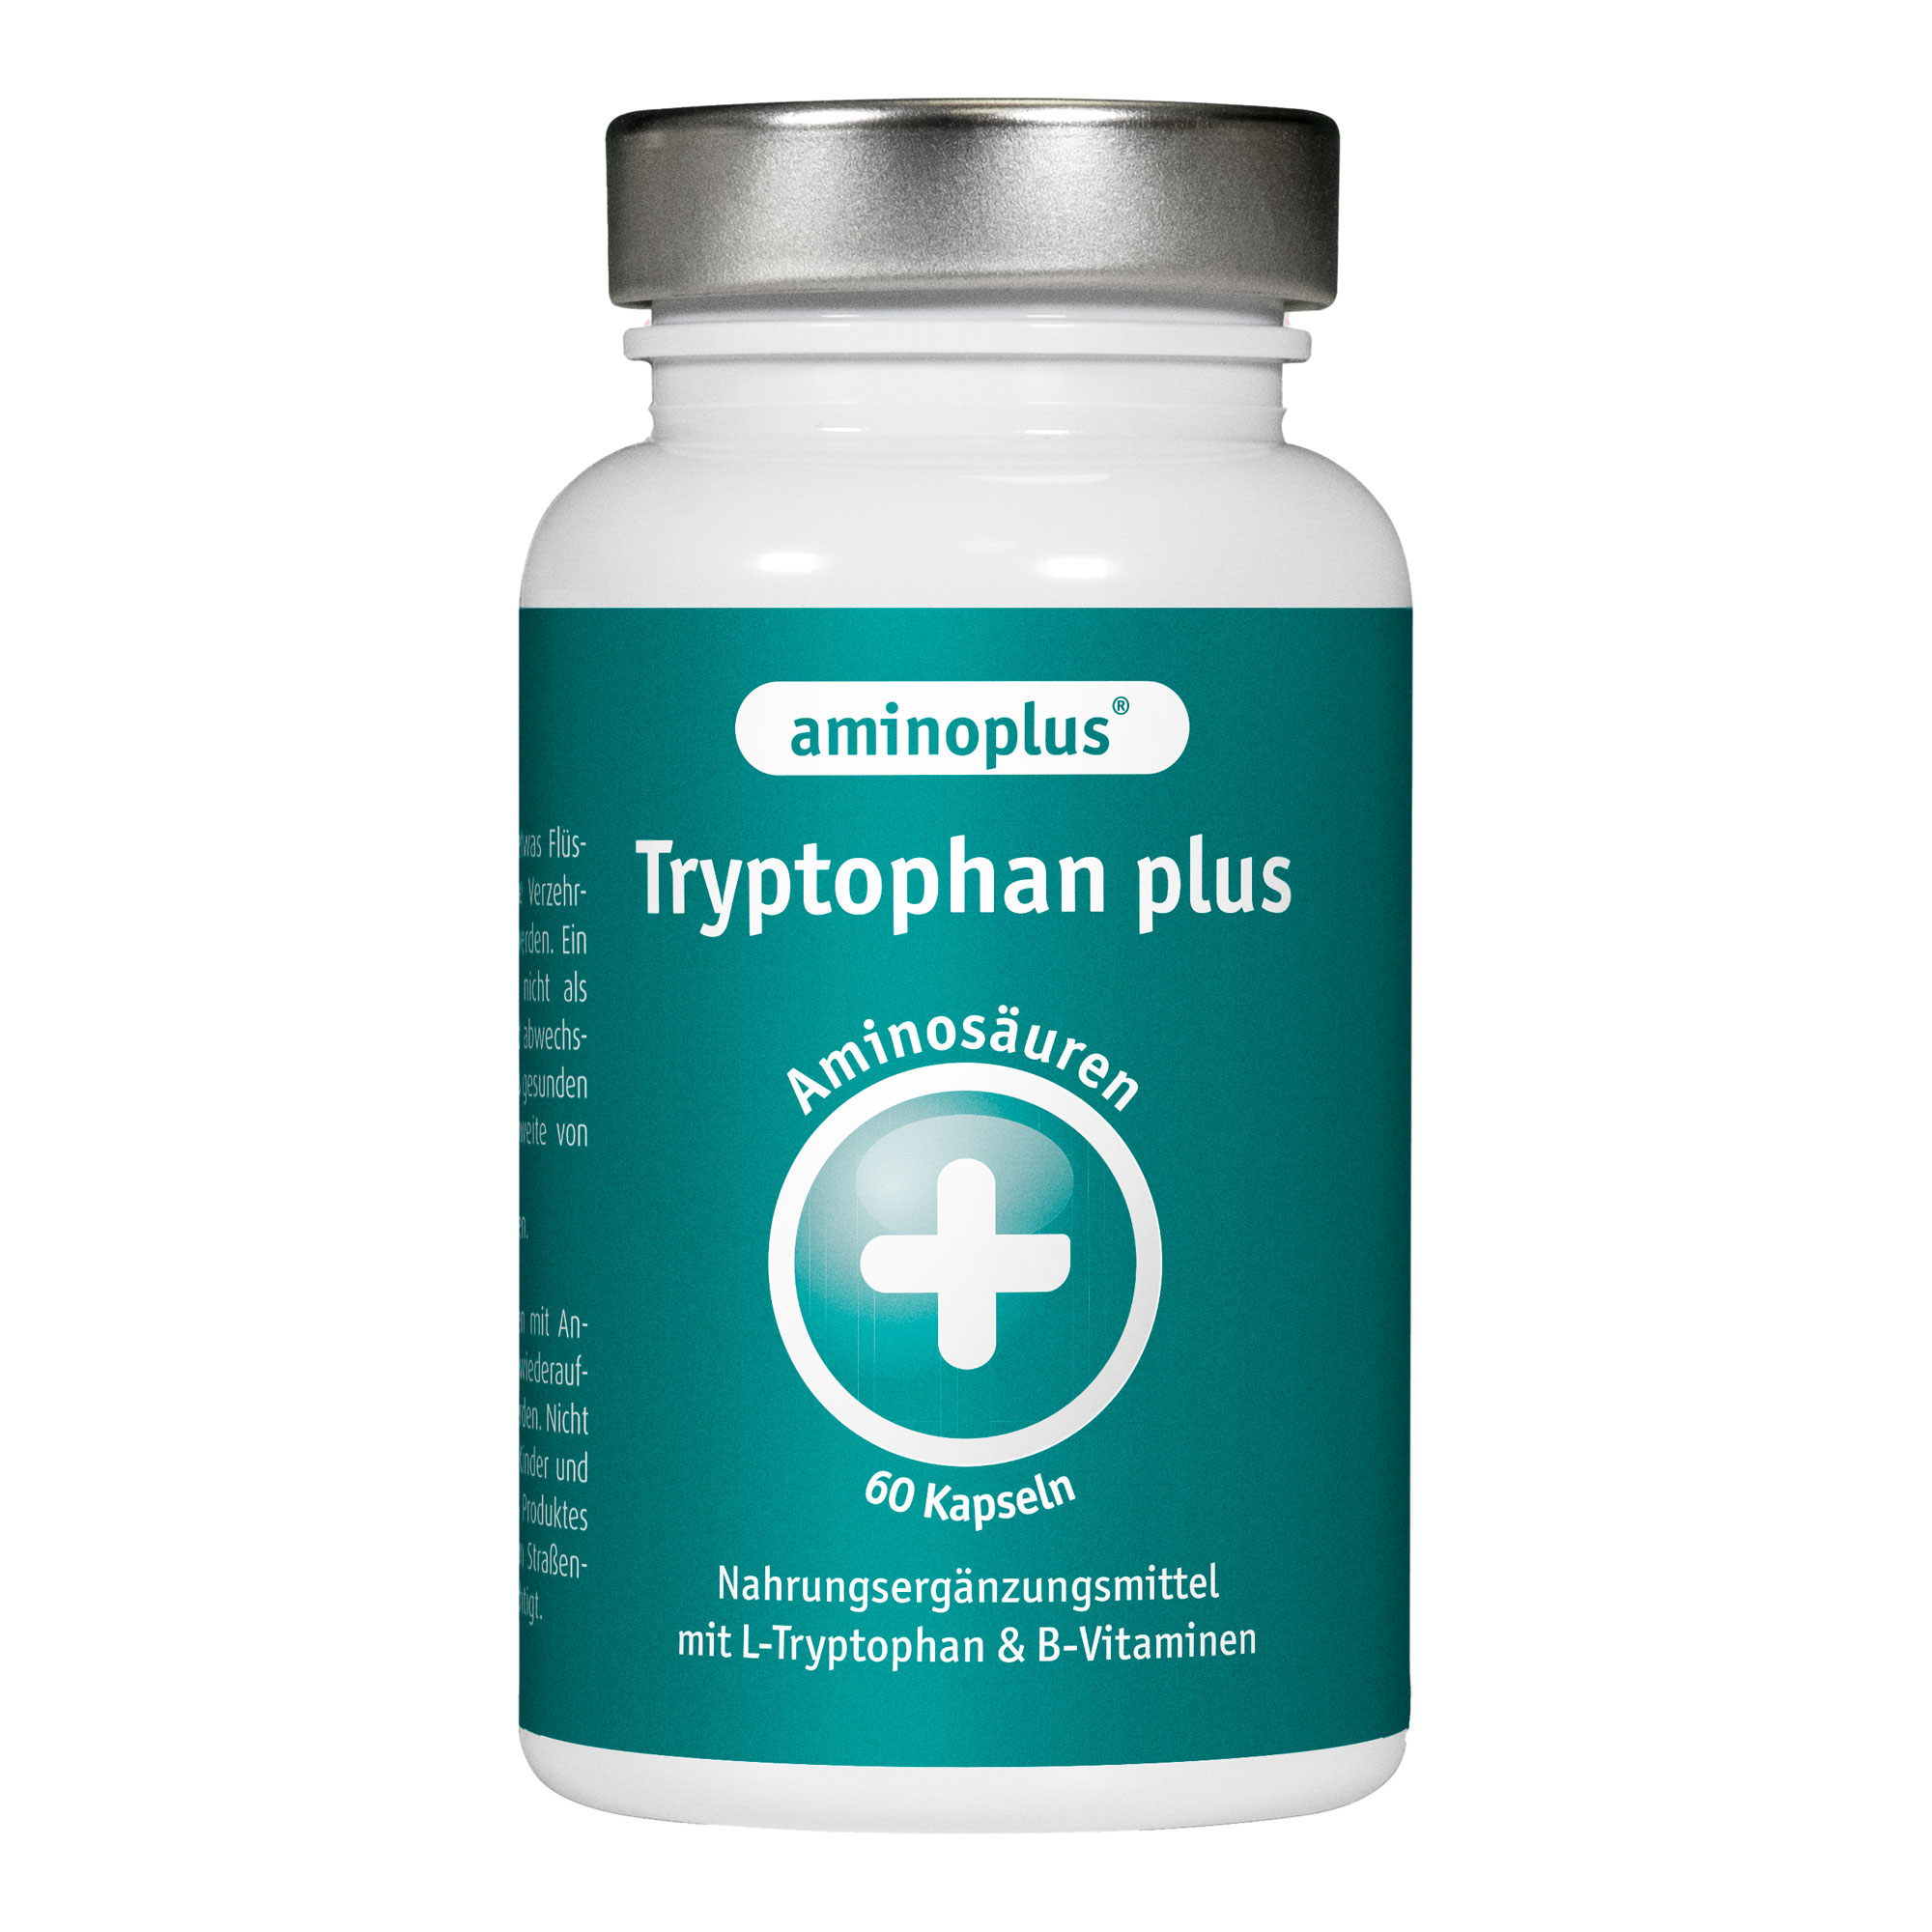 Nahrungsergänzungsmittel mit L-Tryptophan und B-Vitaminen.